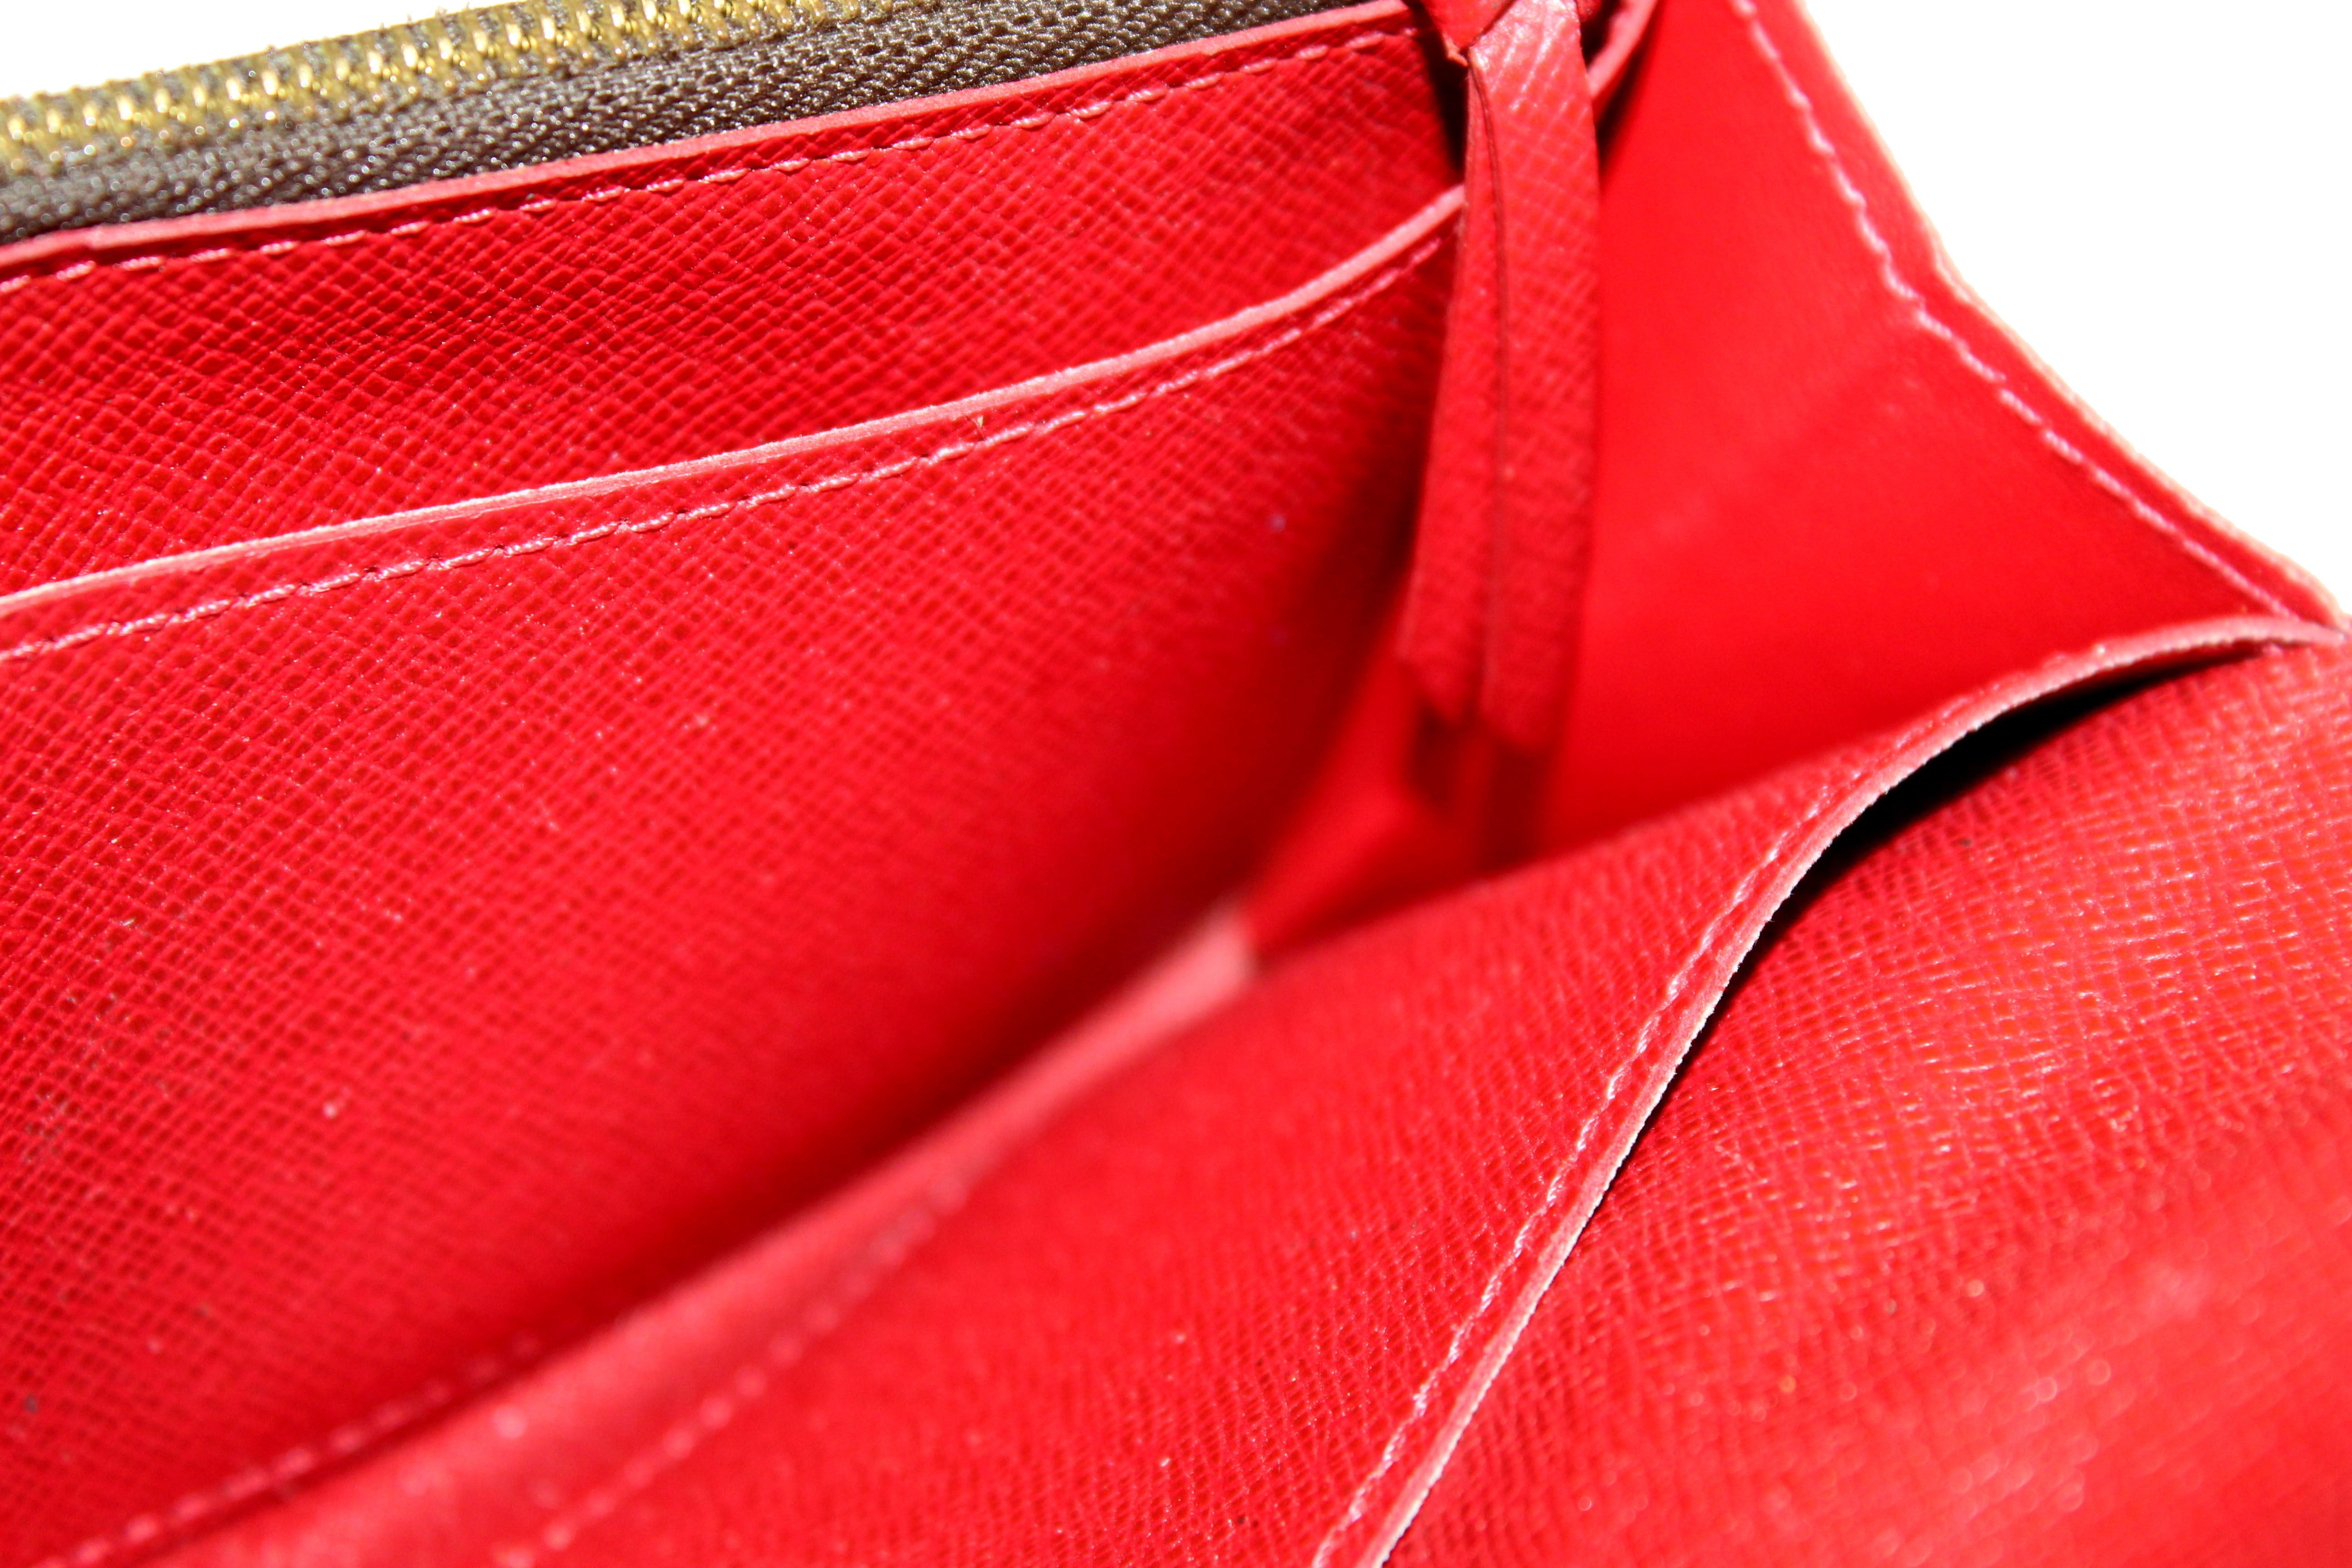 Louis Vuitton Damier Ebene Cassia Red Trim Wallet – The Don's